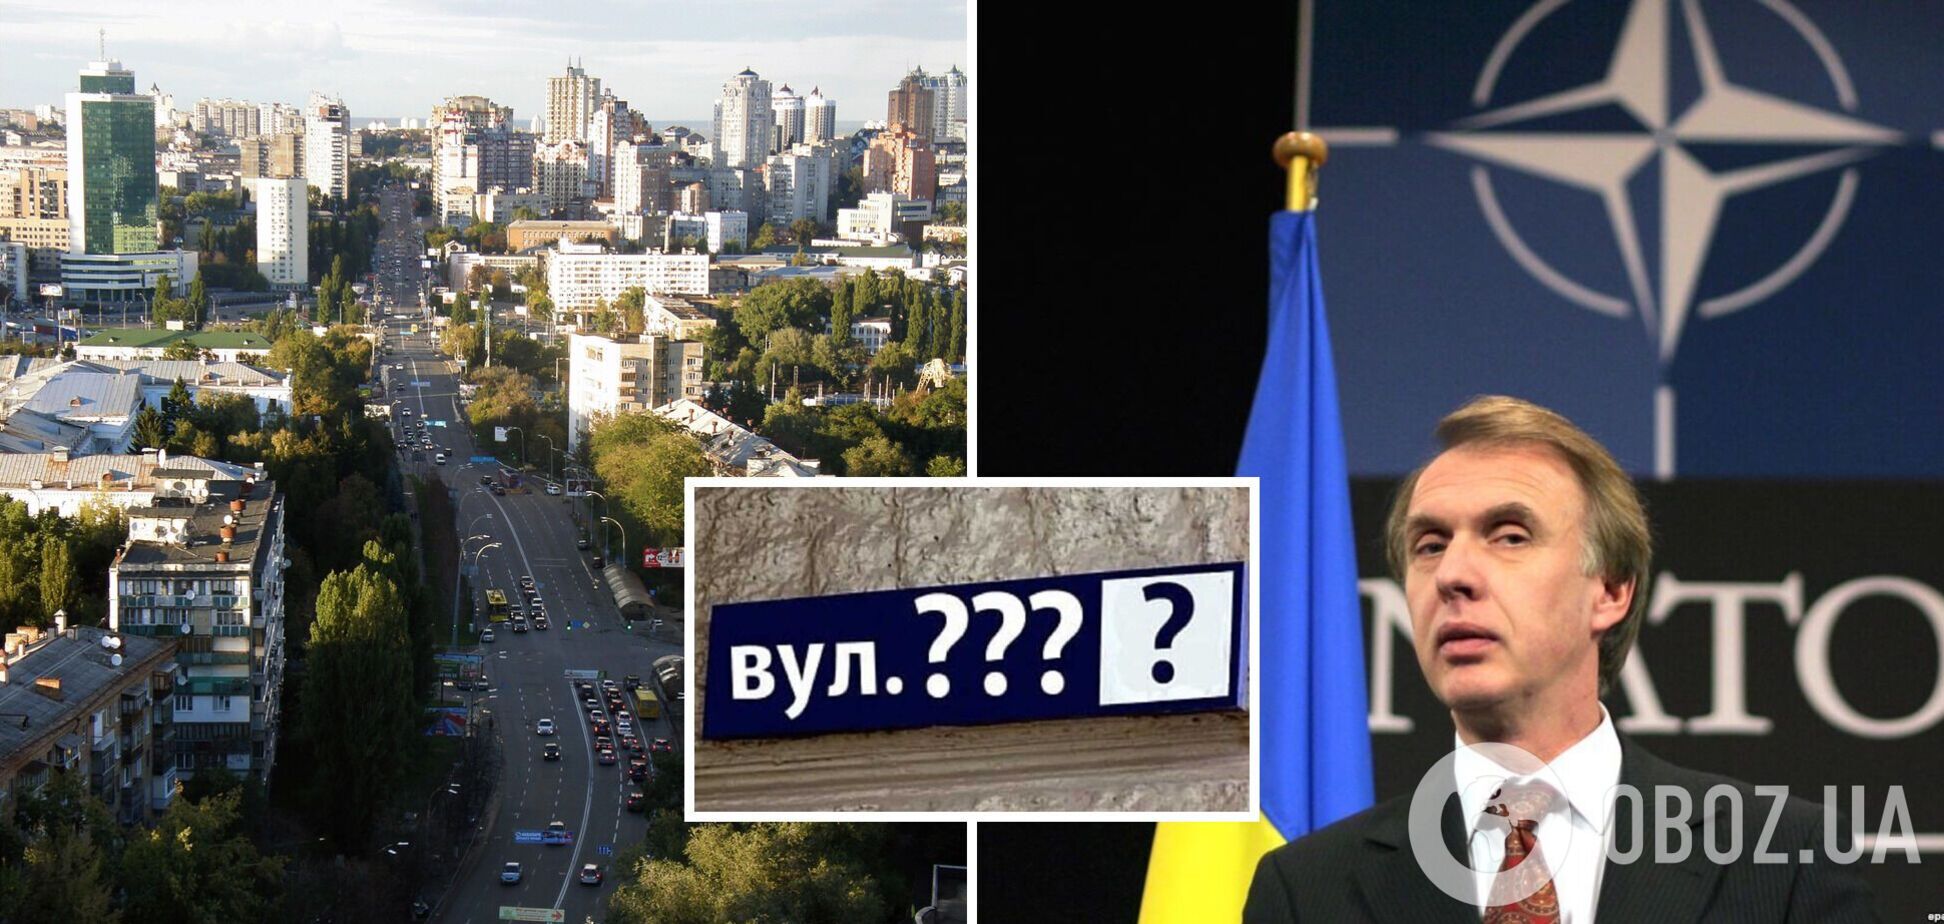 Воздухофлотский проспект в Киеве призвали переименовать в проспект Евросоюза